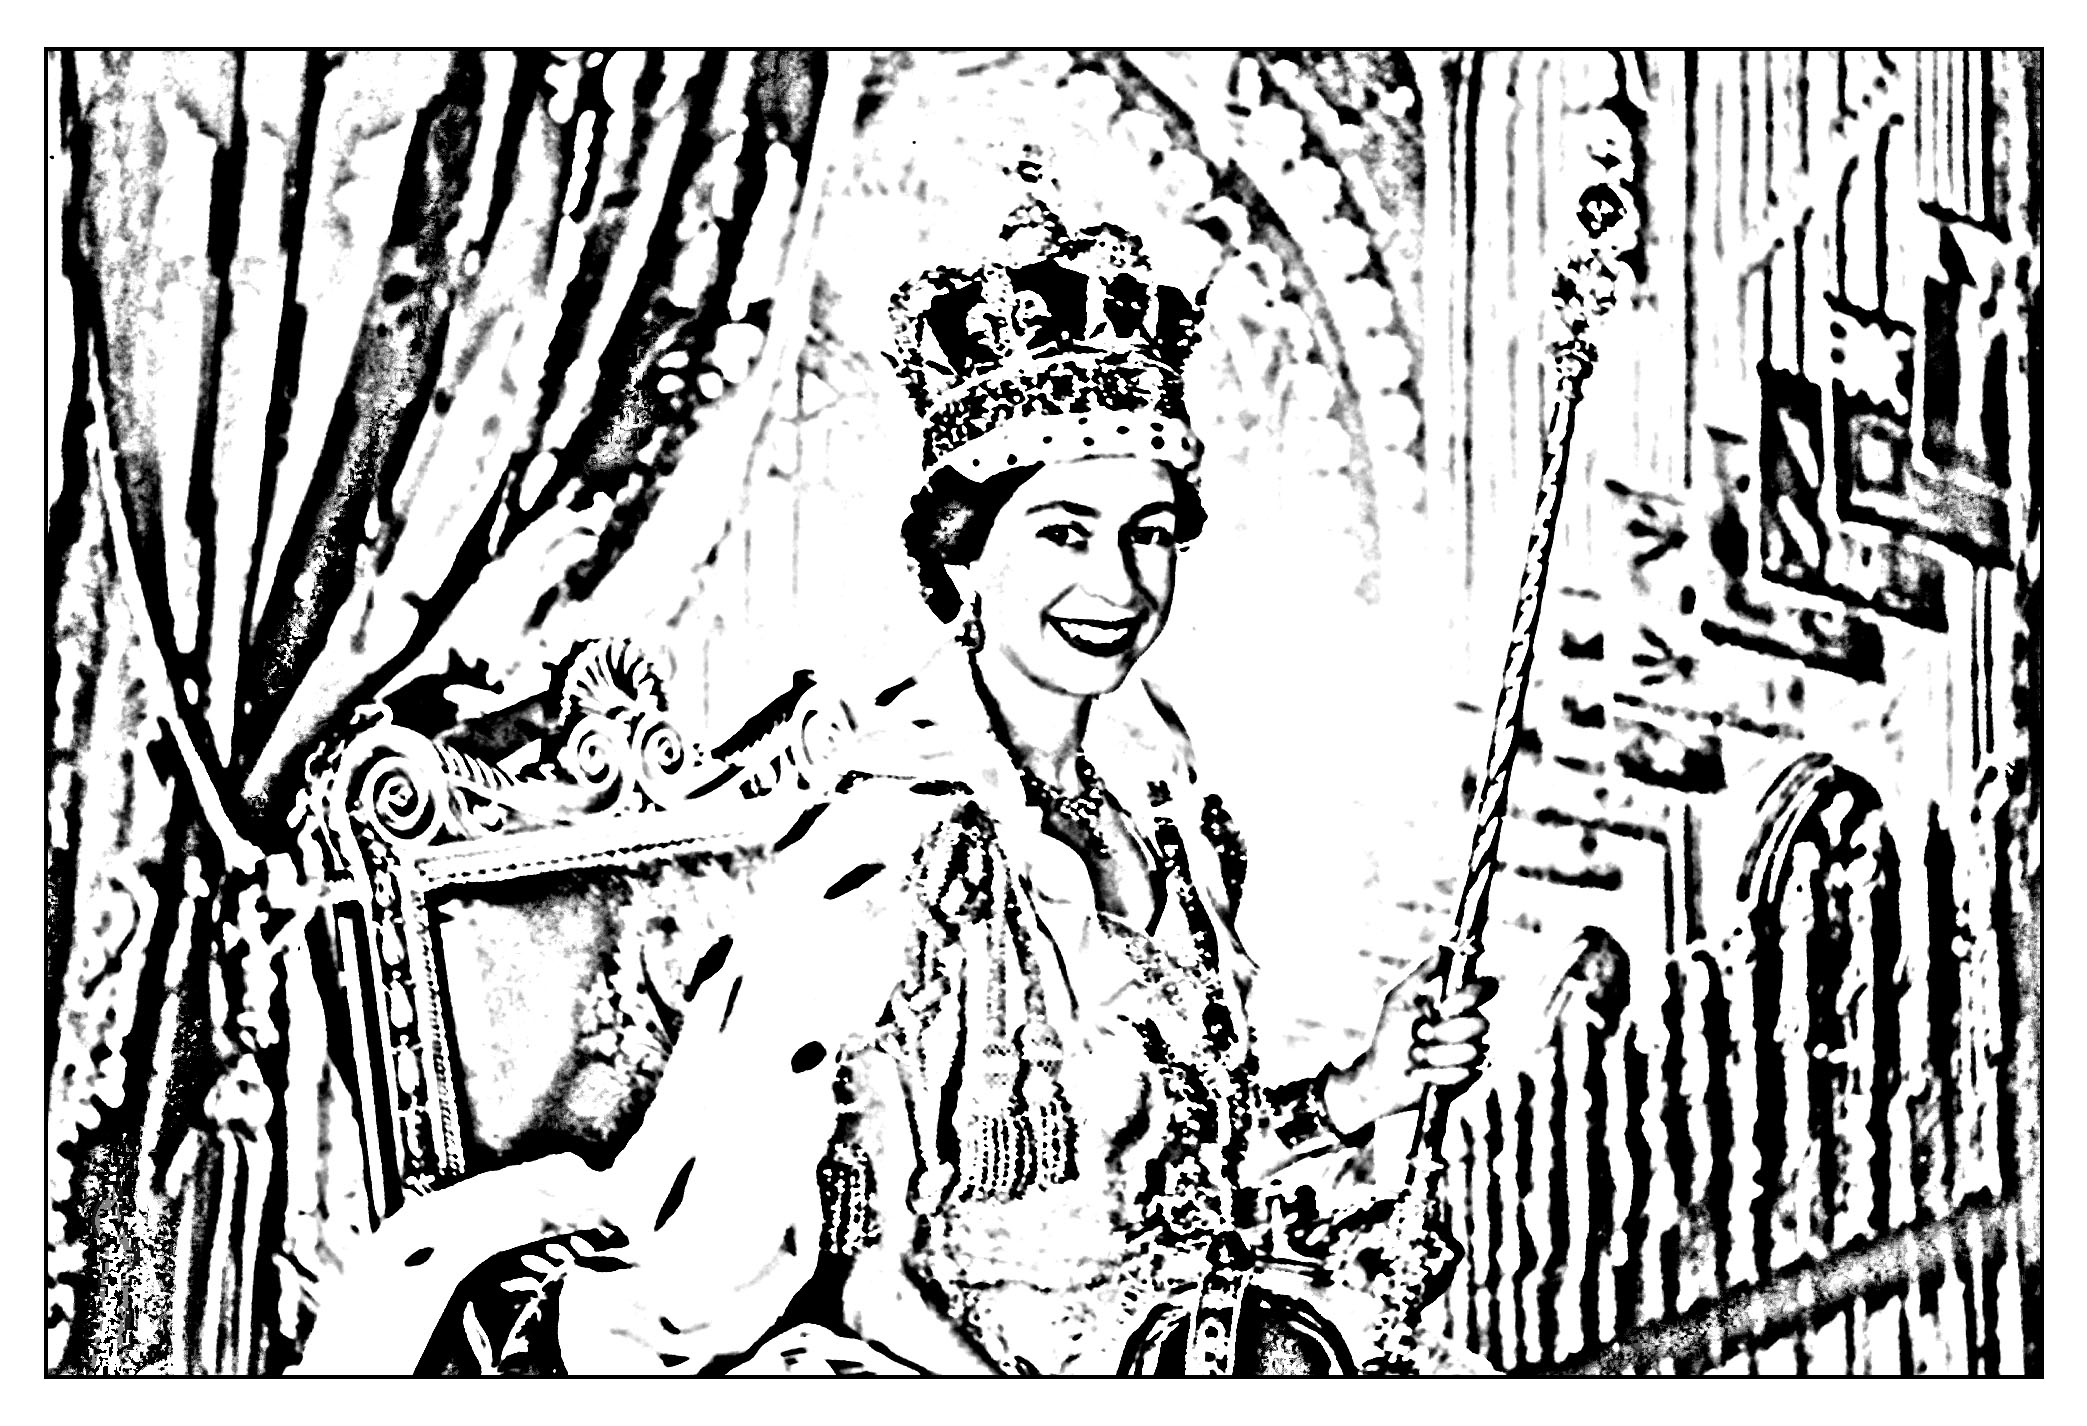 Coloração criada a partir de uma fotografia oficial tirada aquando da coroação da Rainha Isabel II em 1953 (vista frontal).